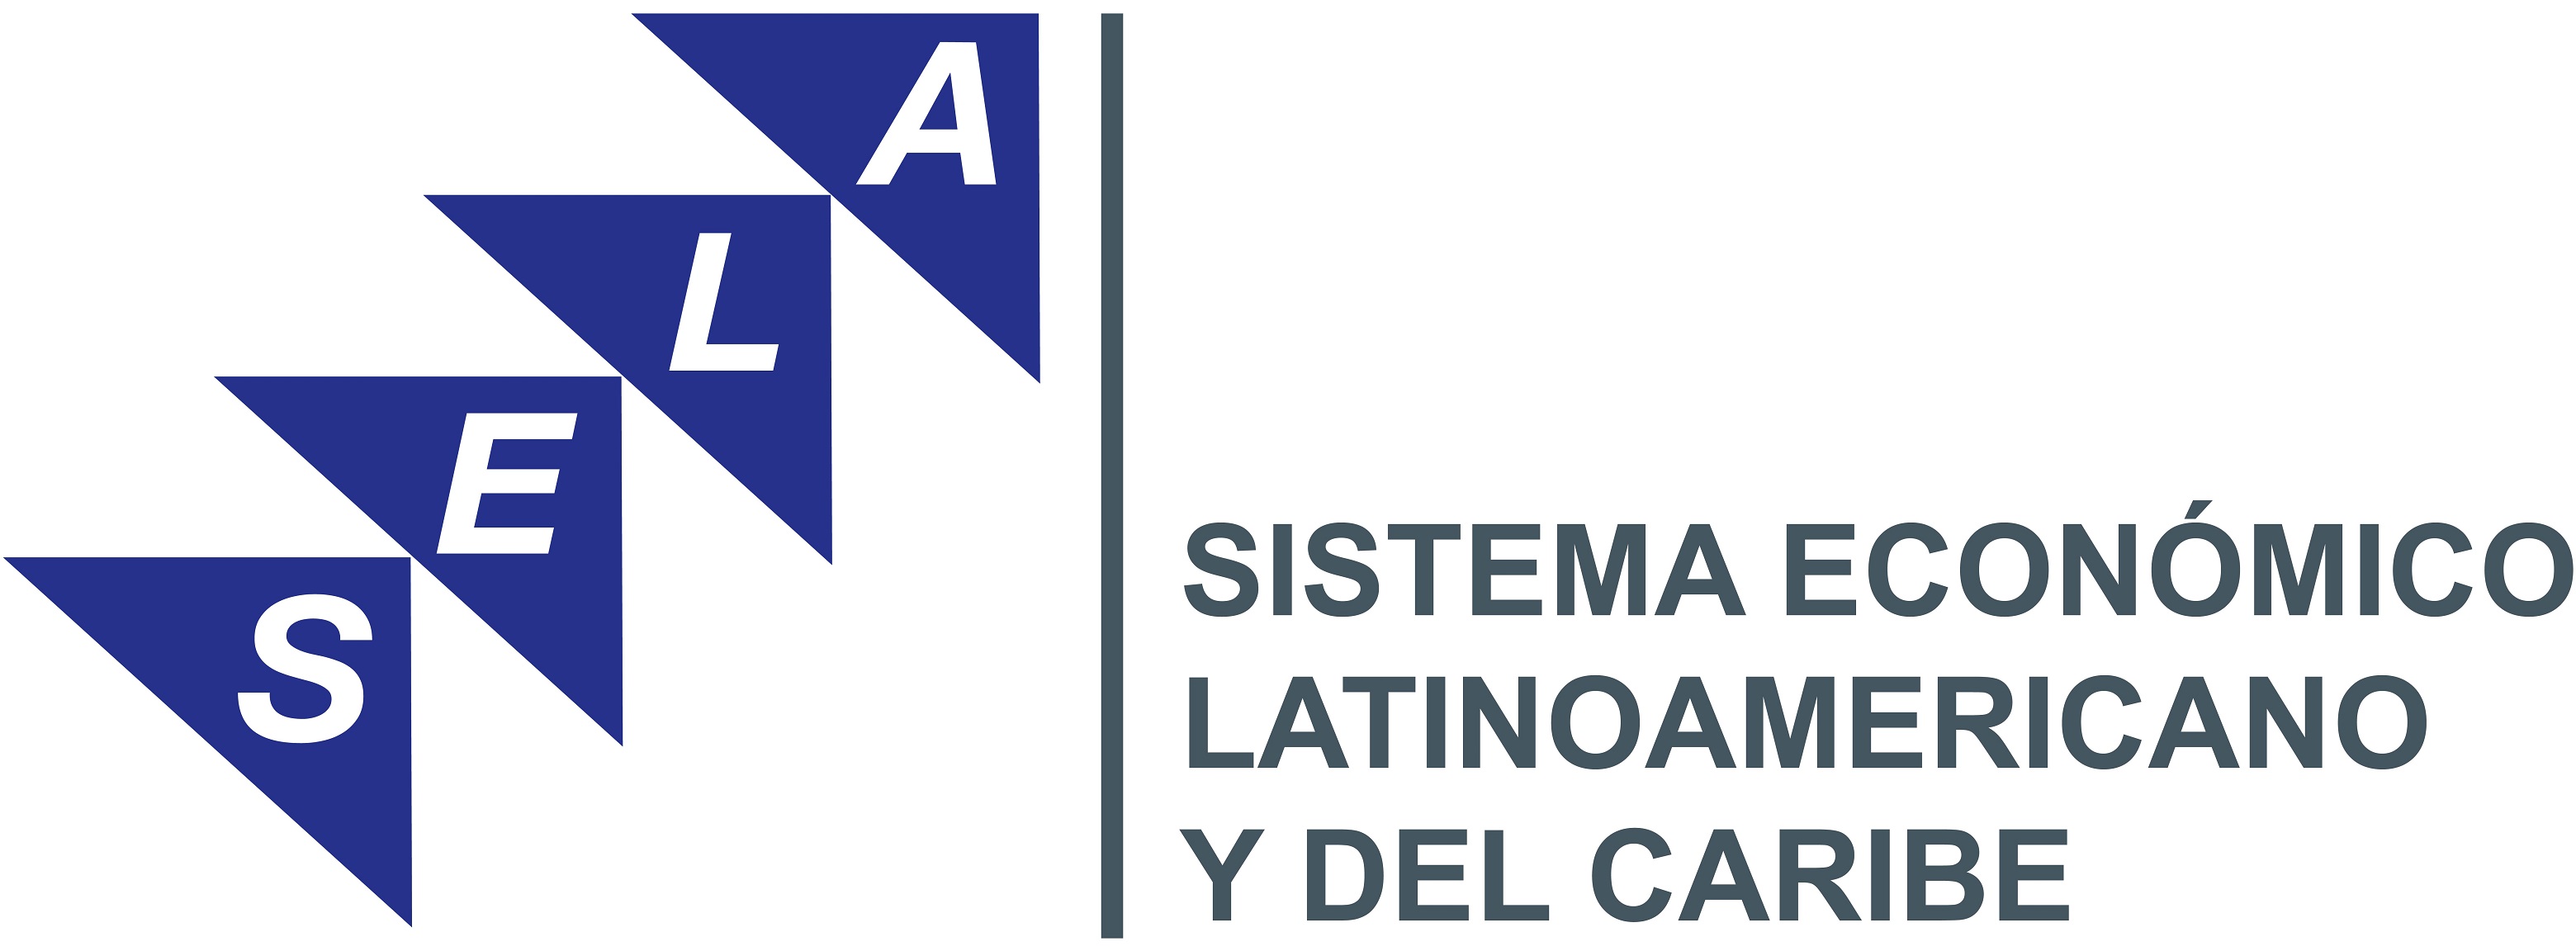 SELA: 44 años propiciando acciones en favor de América Latina y el Caribe